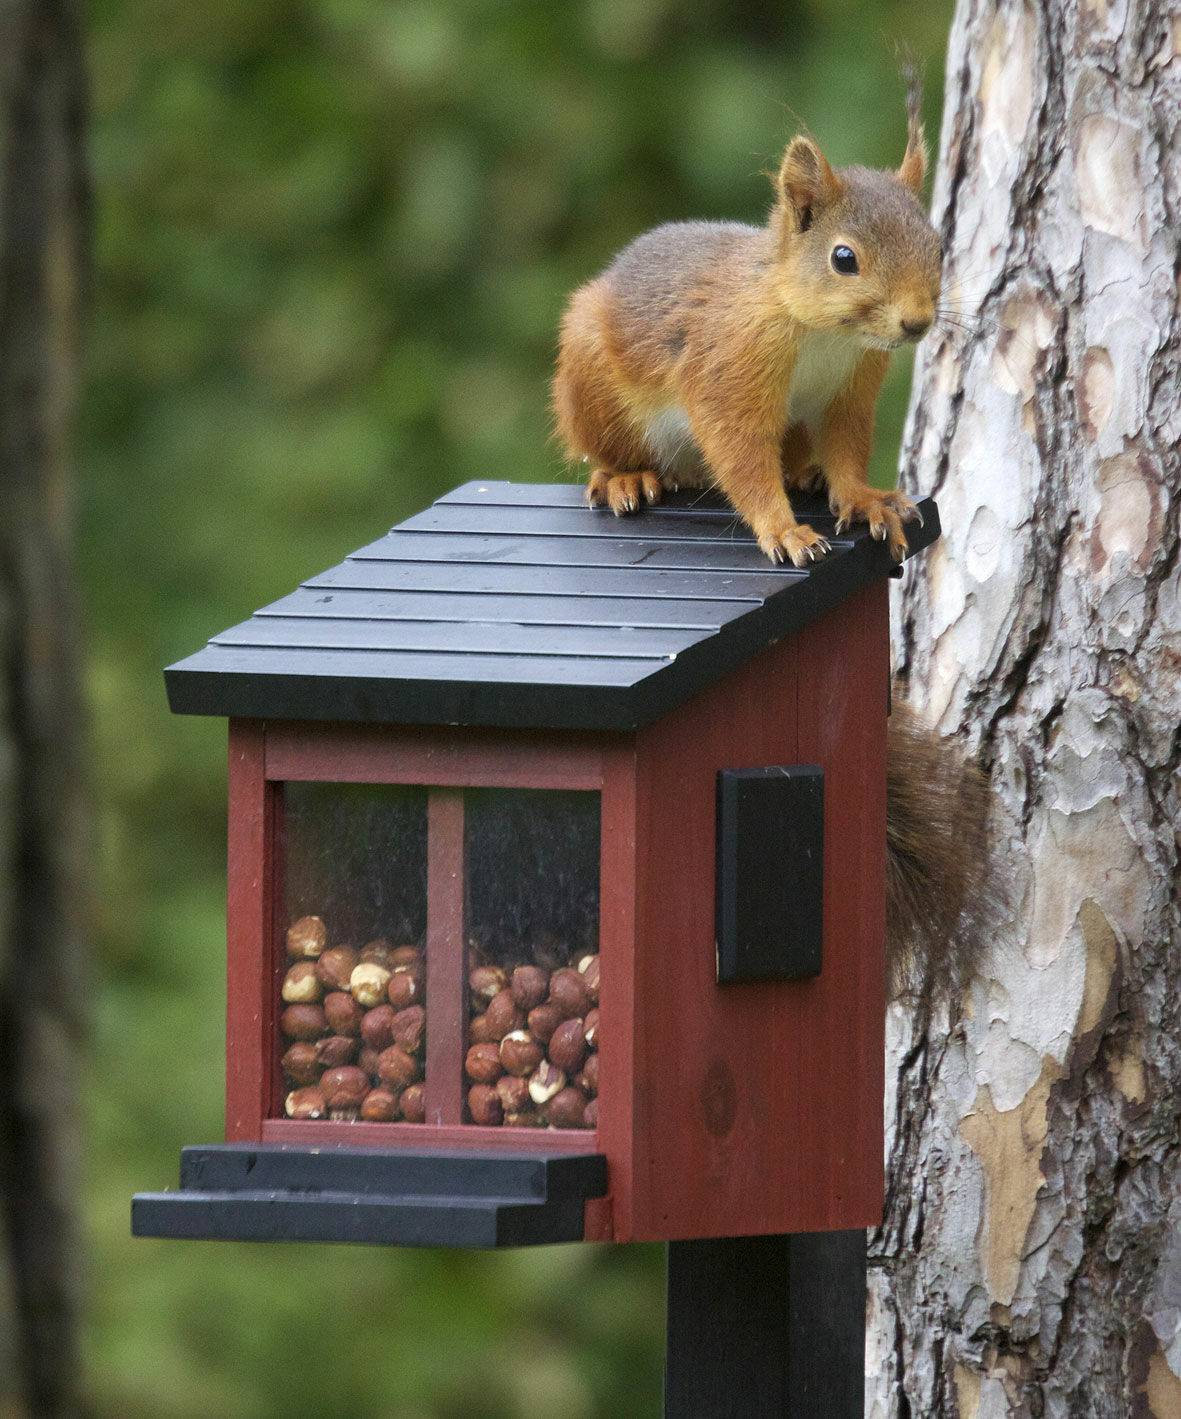 Feeding for squirrels